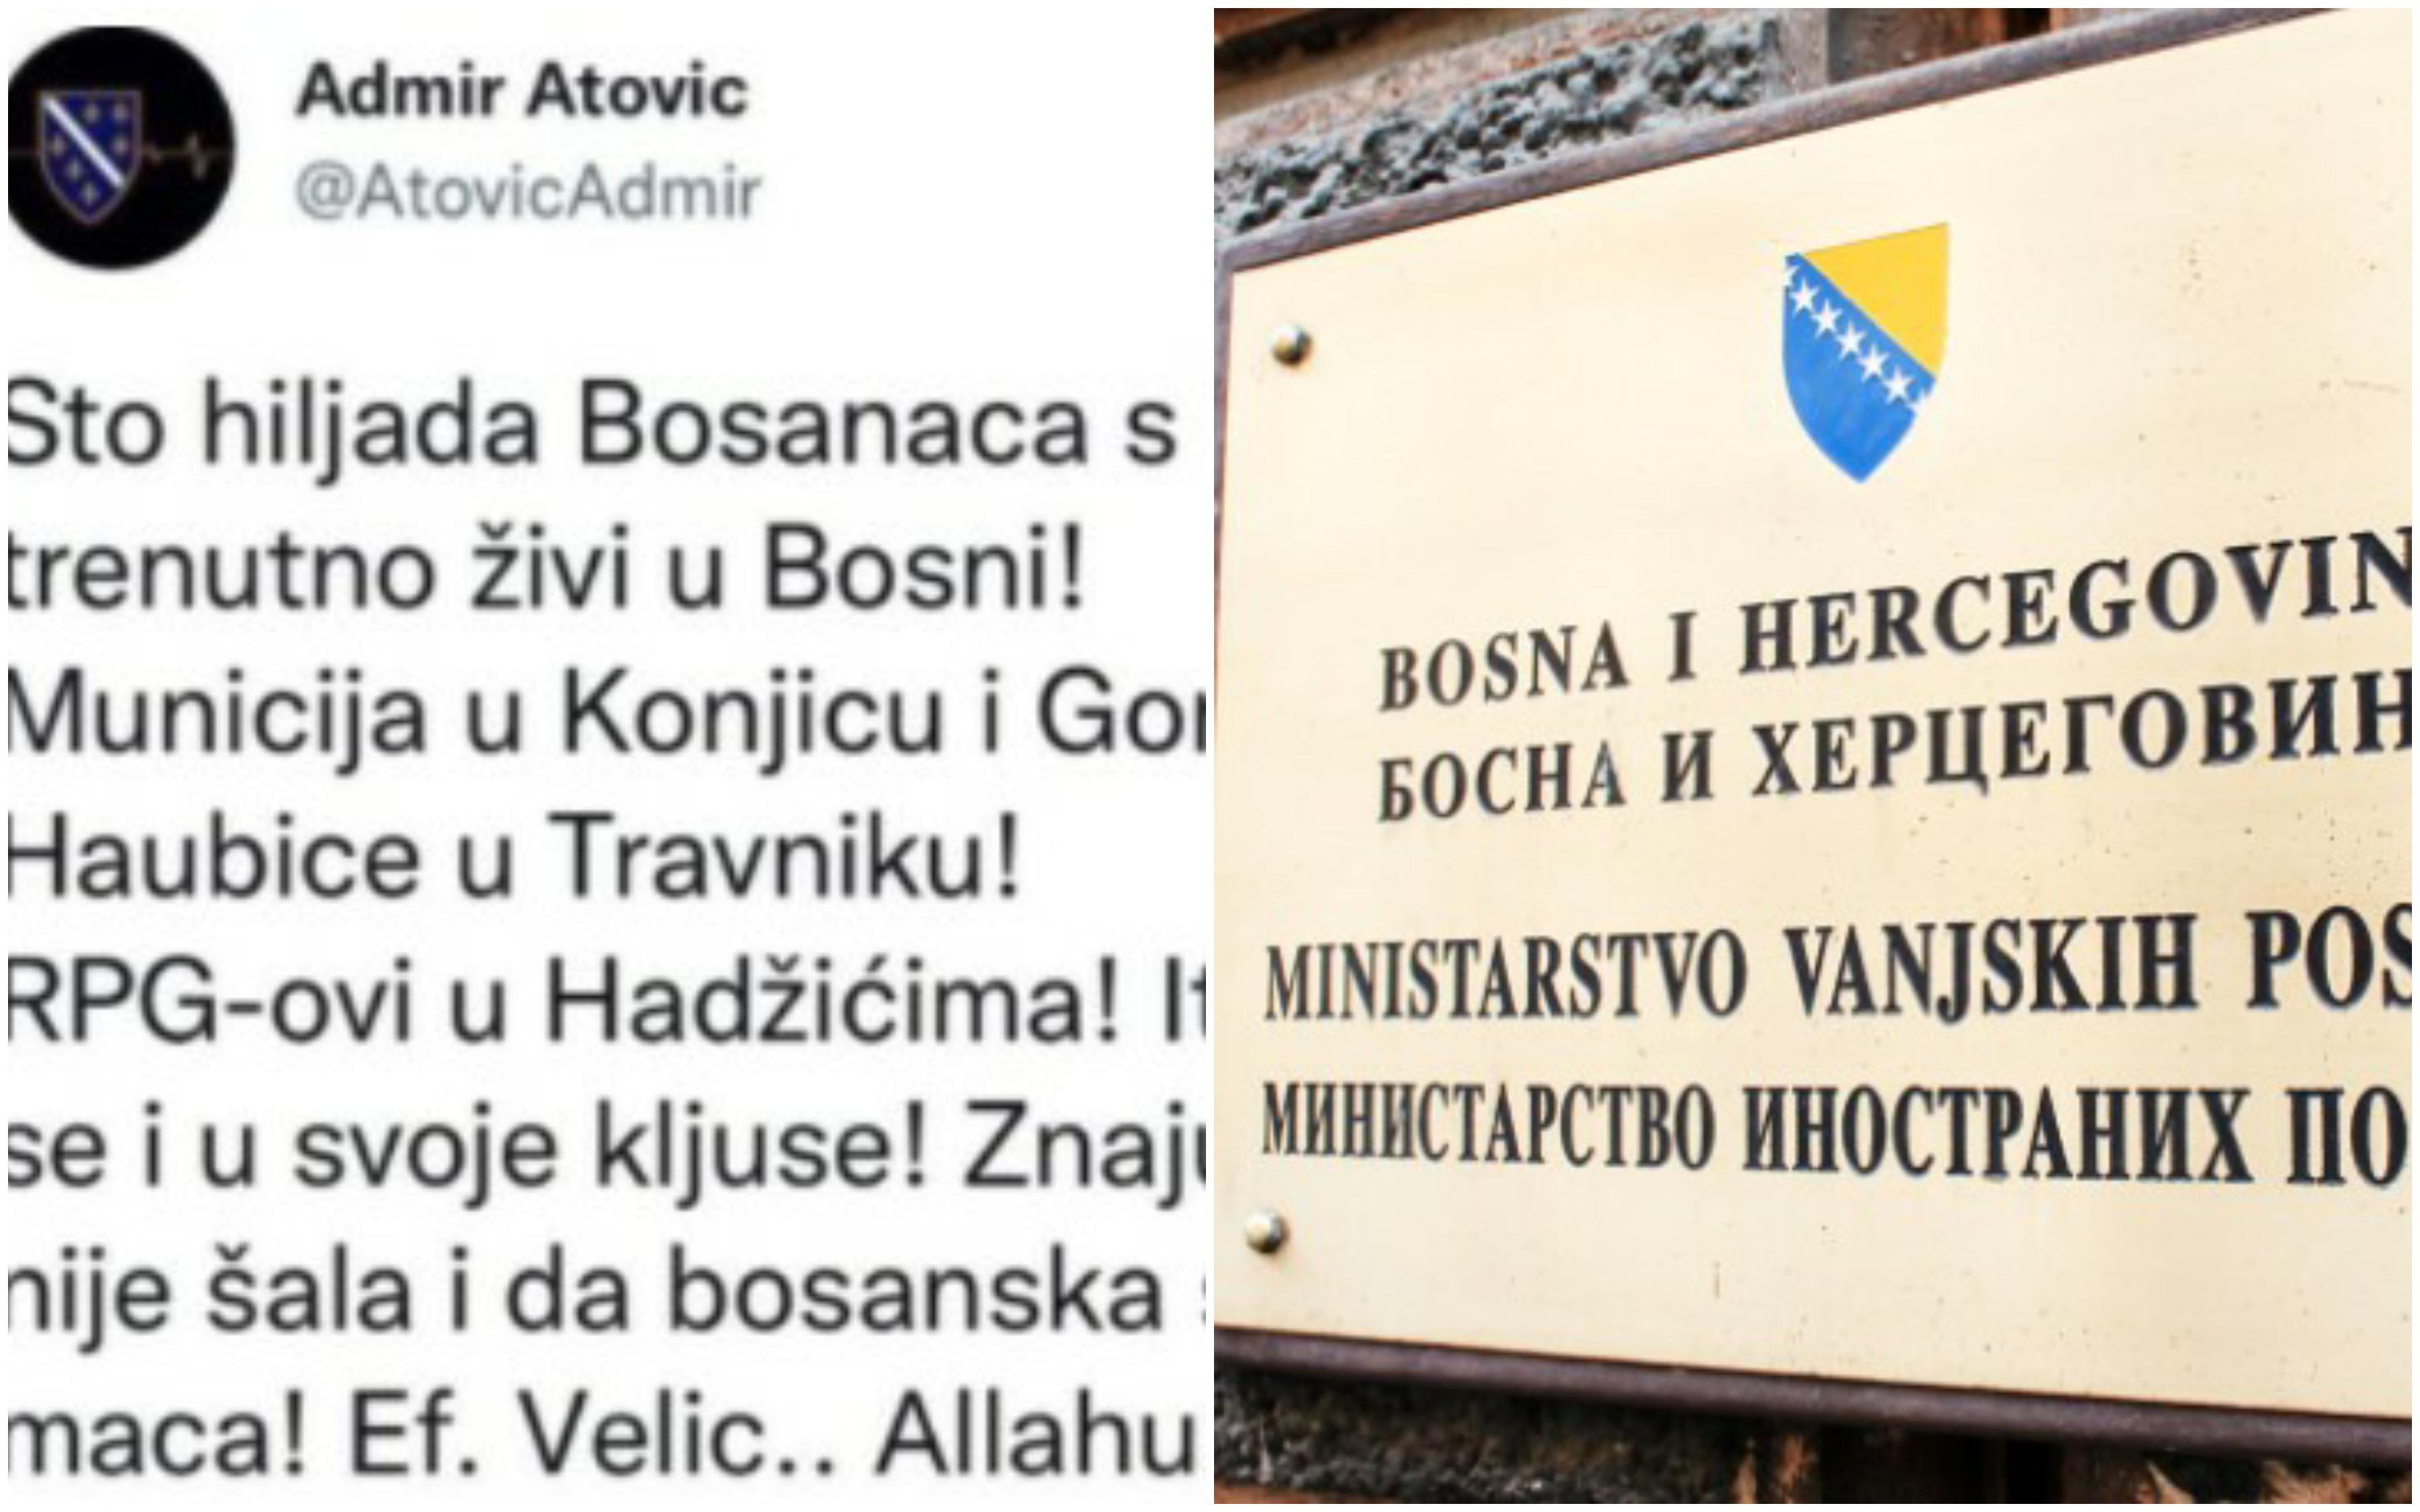 Ministarstvo vanjskih poslova: Zatraženo hitno izjašnjenje Atovića zbog statusa "Sto hiljada Bosanaca s iskustvom rata trenutno živi u Bosni"